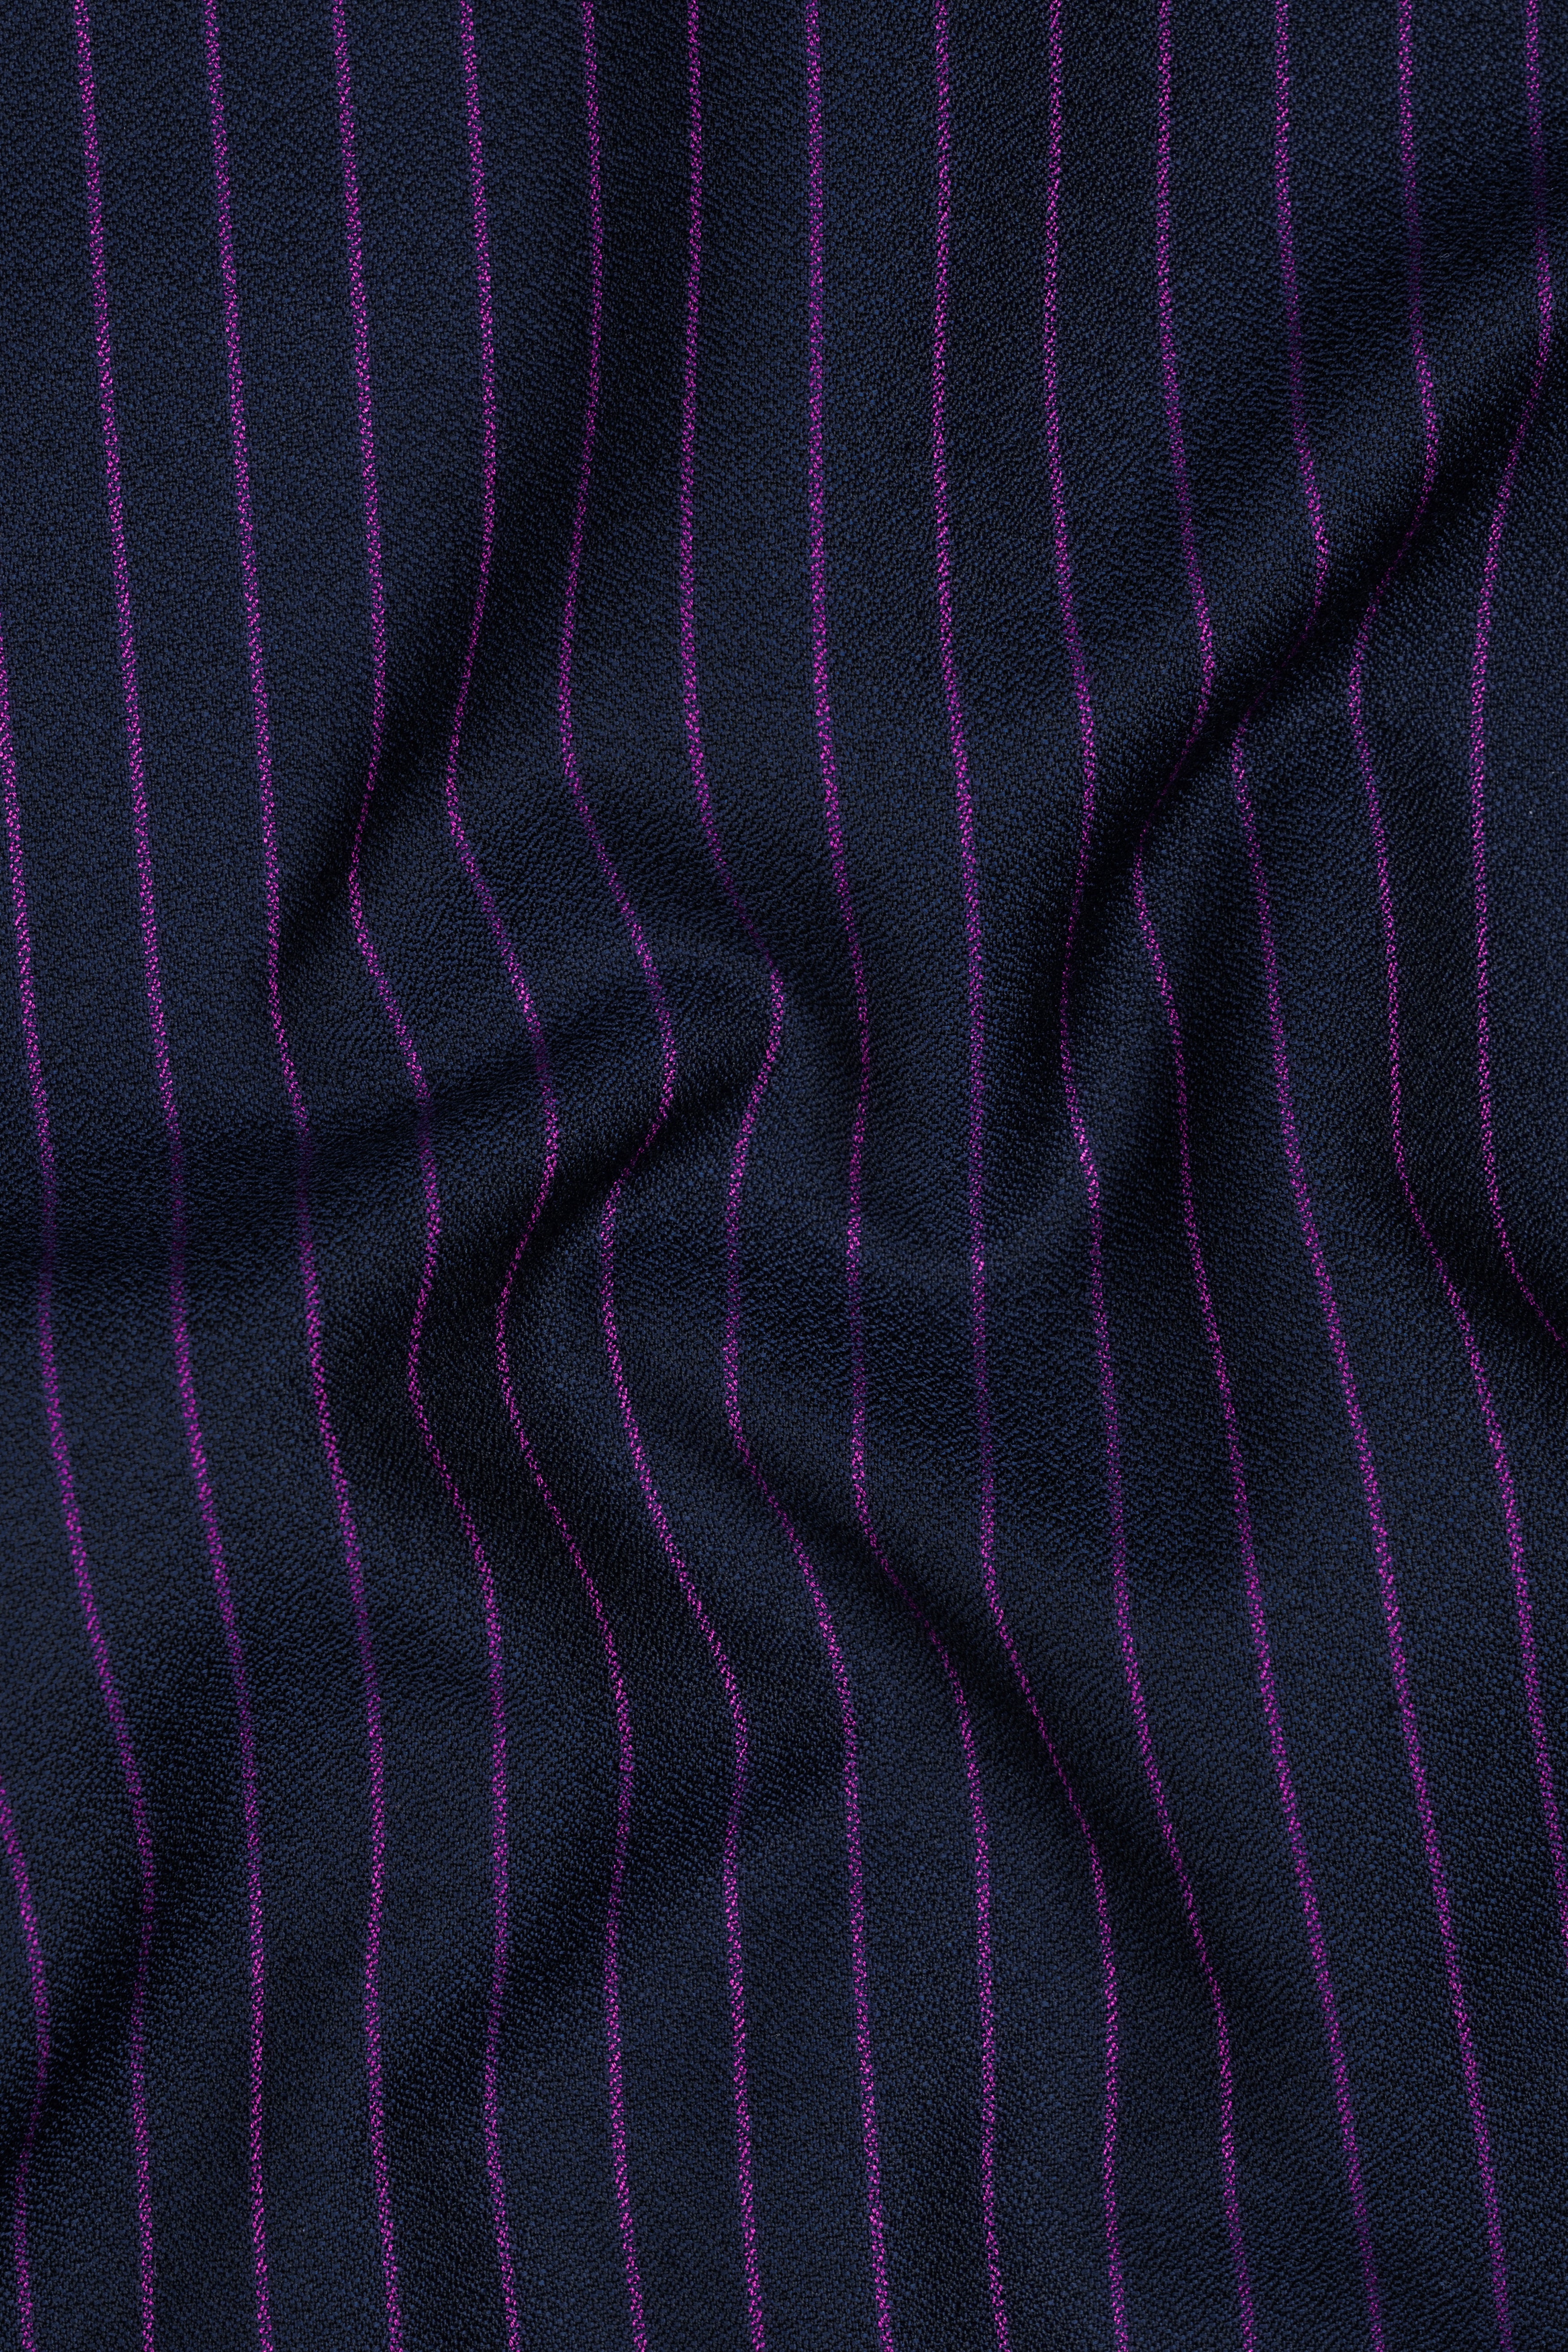 Steel Gray with Grape Purple Striped Wool Blend Waistcoat